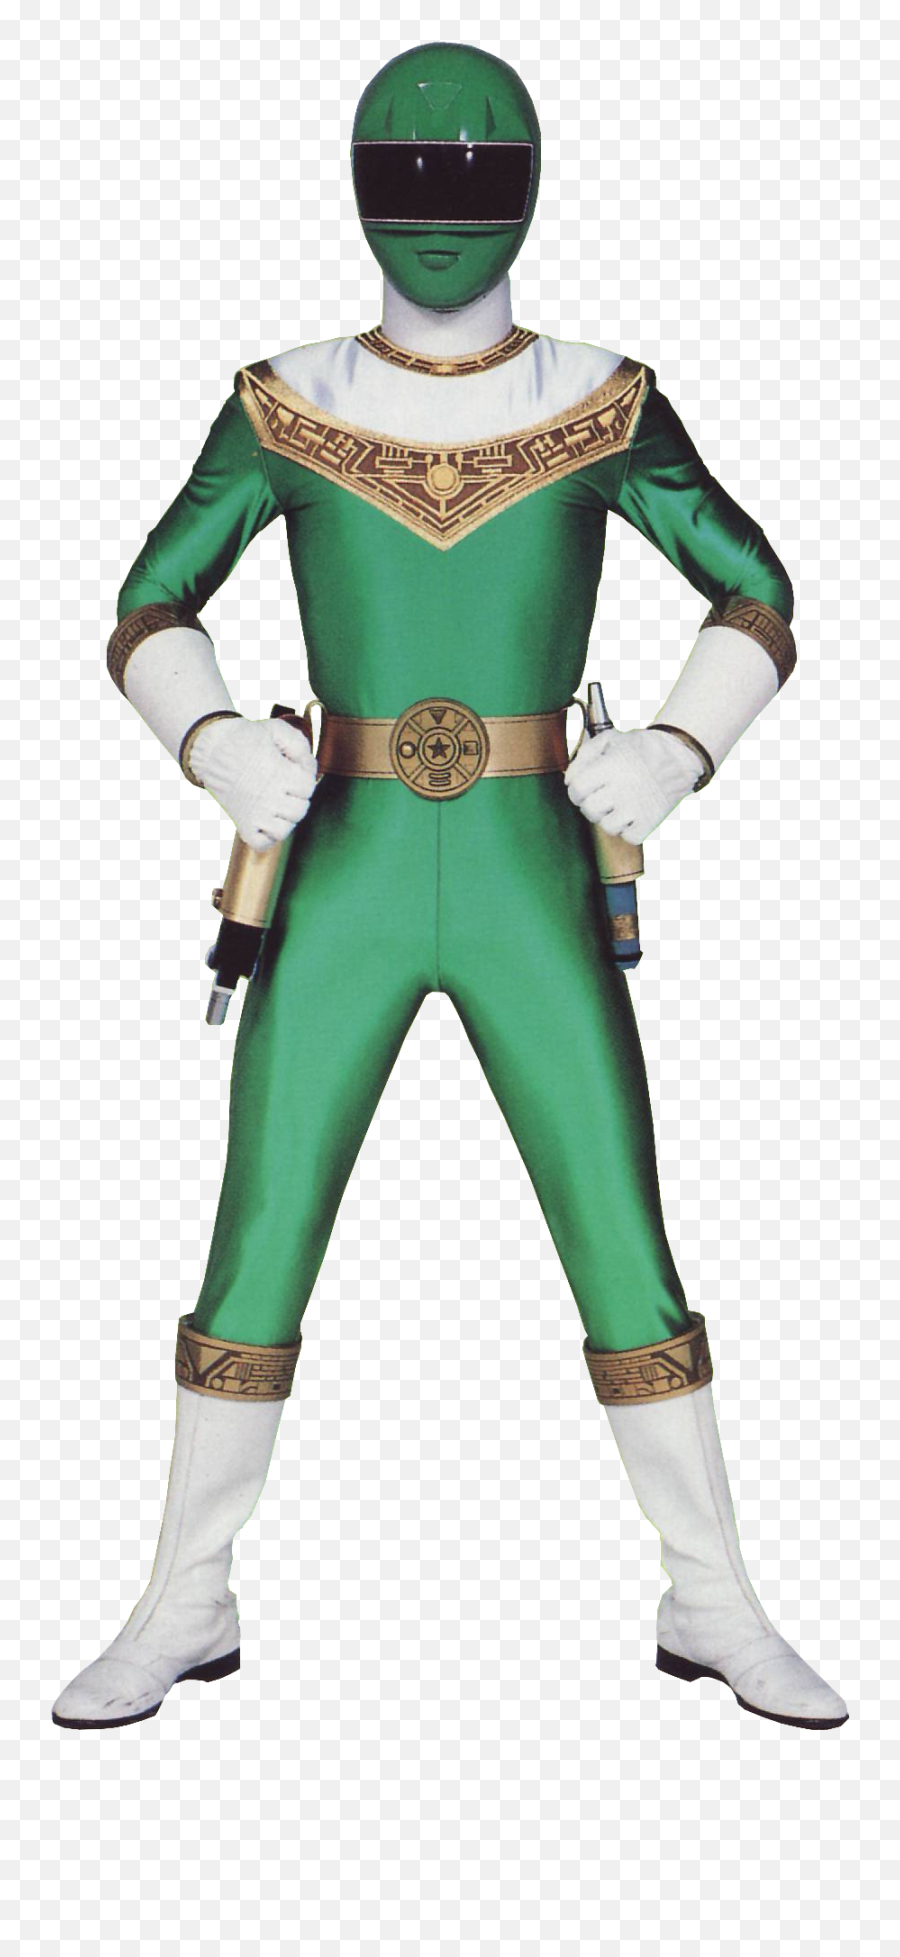 Ranger Green Power Rangers Zeo - Power Rangers Zeo Green Ranger Png,Green Ranger Png